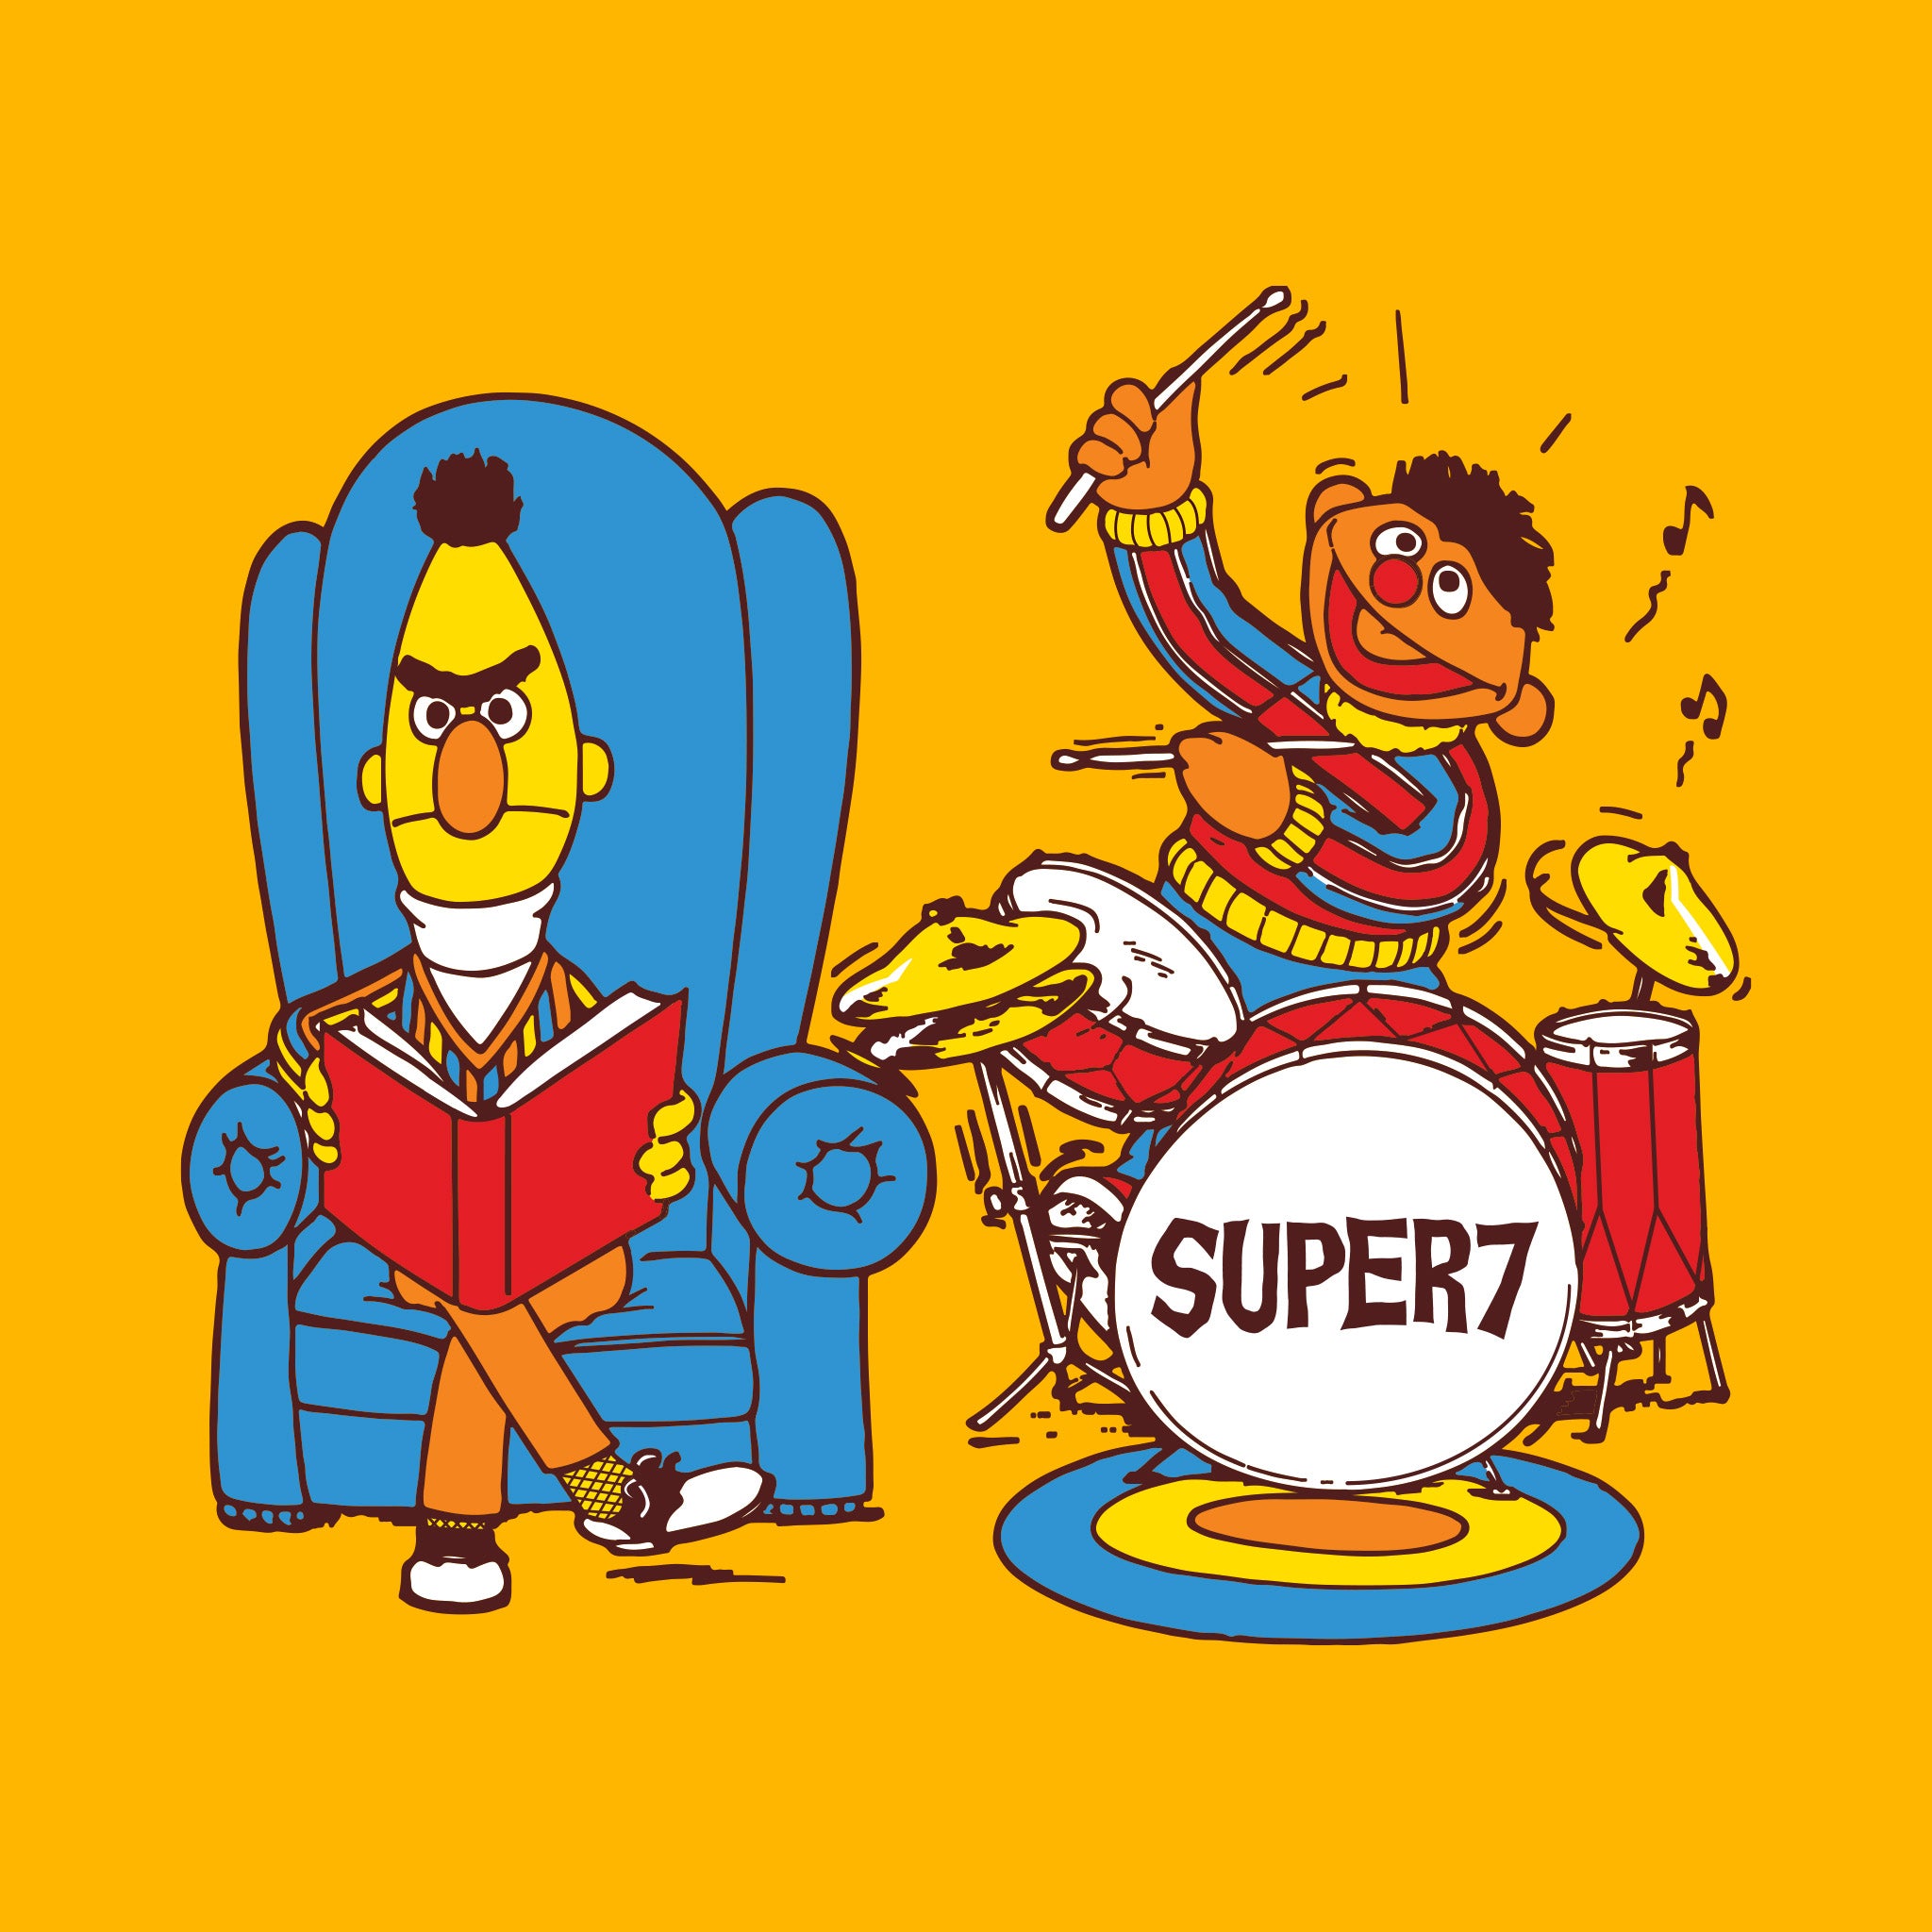 Sesame Street T-Shirt - Bert & Ernie Jam